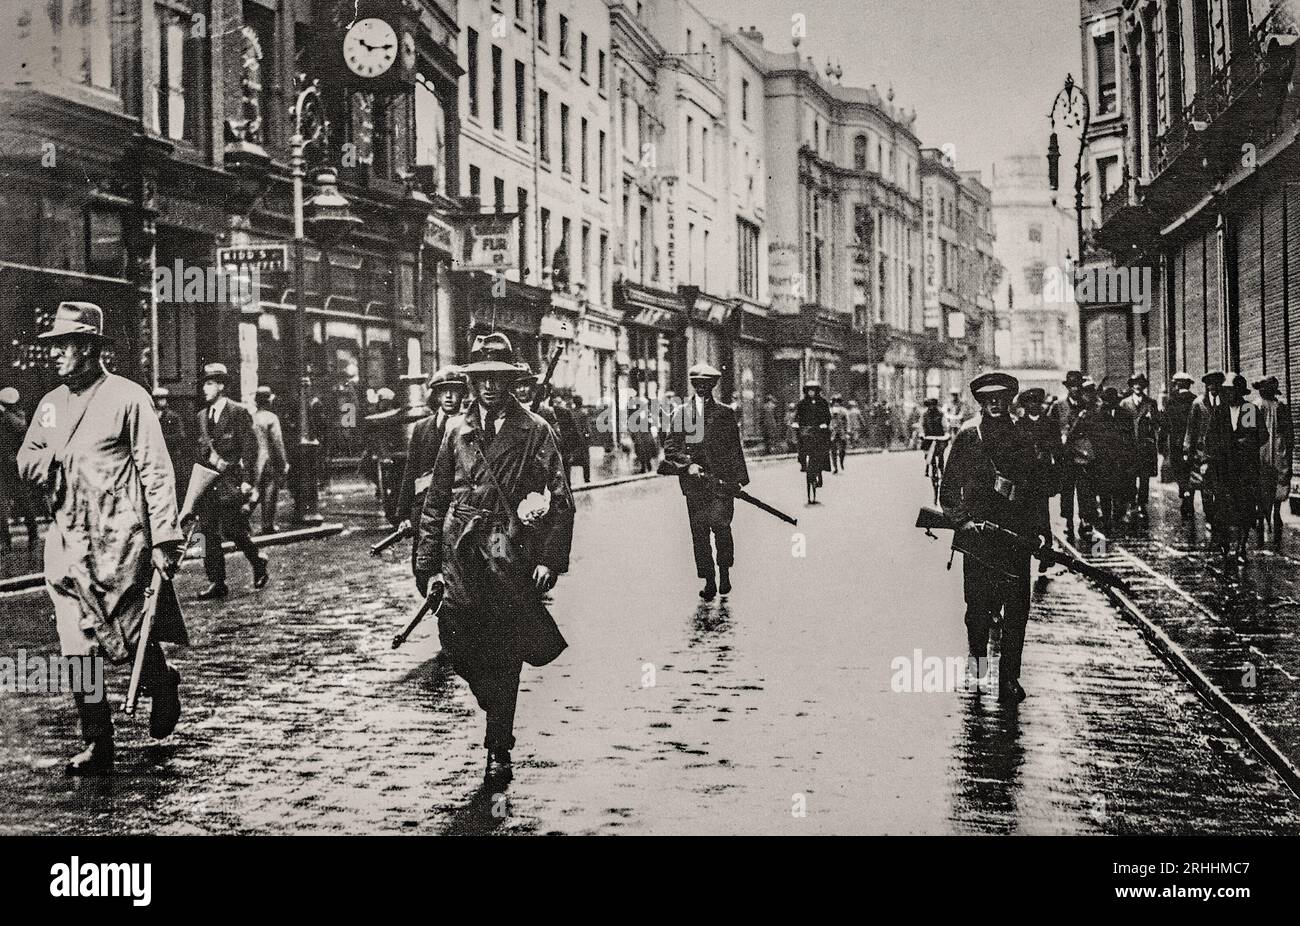 Ein Foto aus dem frühen 20. Jahrhundert von Republikanern, die gegen den Vertrag verstoßen und nach Dublin City ziehen (Grafton Street???) Nach der Unterzeichnung des englisch-irischen Vertrags, der zum Bürgerkrieg von 1922 führte. Stockfoto